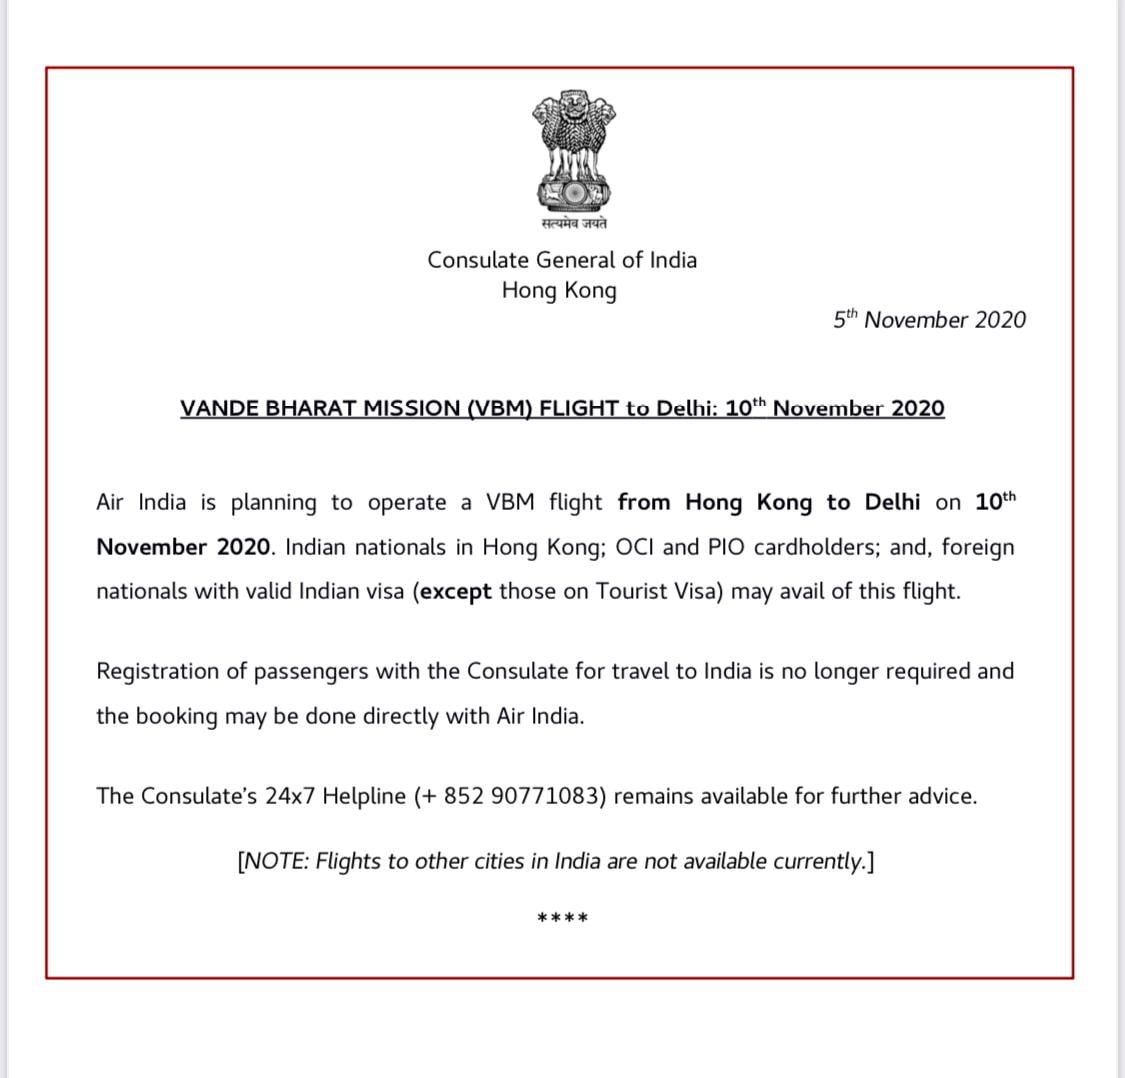 VANDE BHARAT MISSION (VBM) FLIGHT to Delhi: 10th November 2020